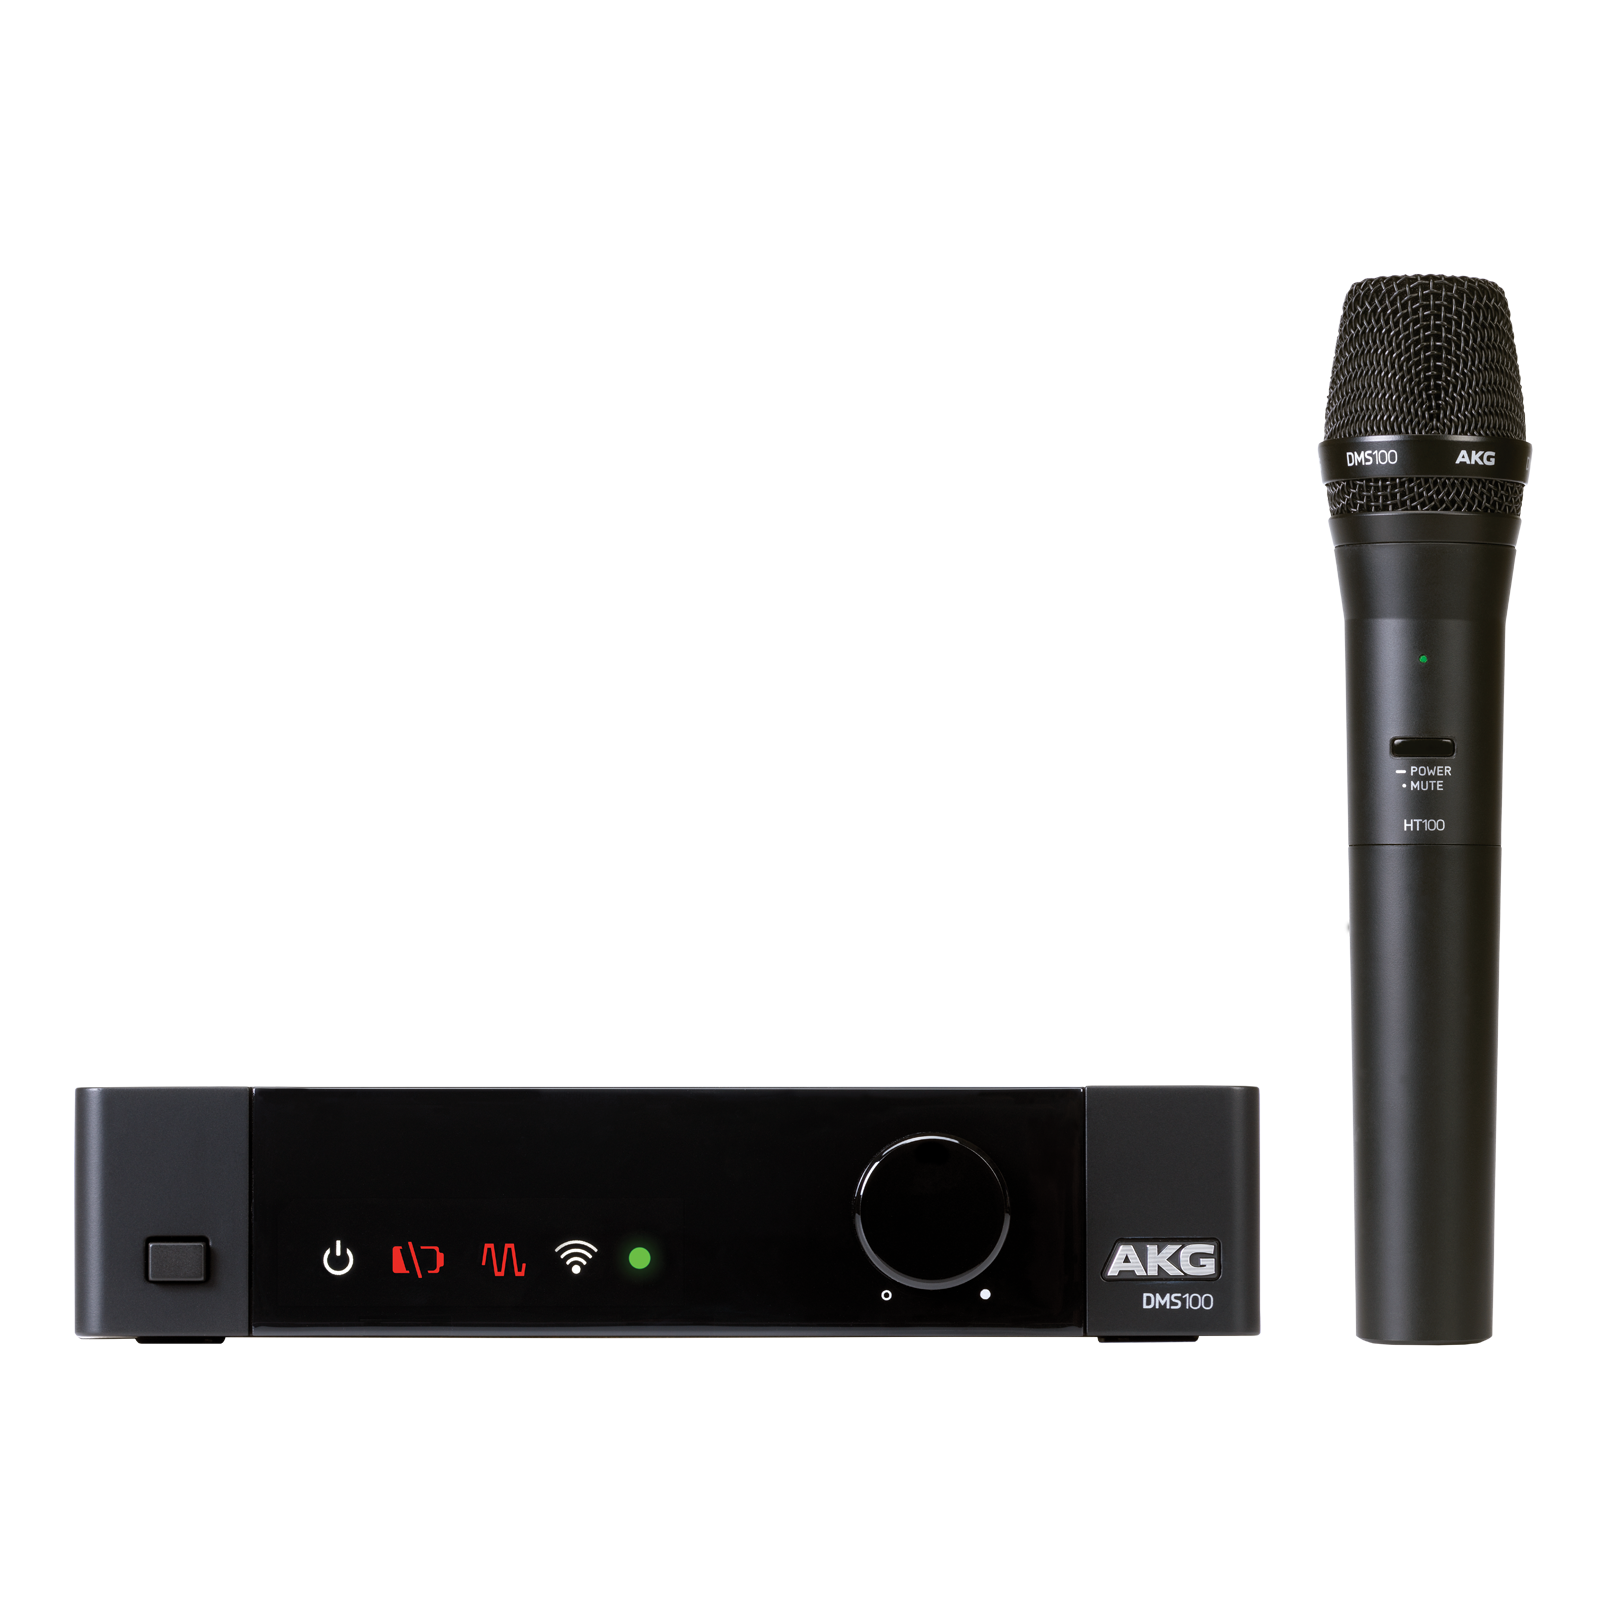 lekkage passen koel DMS100 Microphone Set | Vierkanaals 2,4 GHz digitaal draadloos  microfoonsysteem